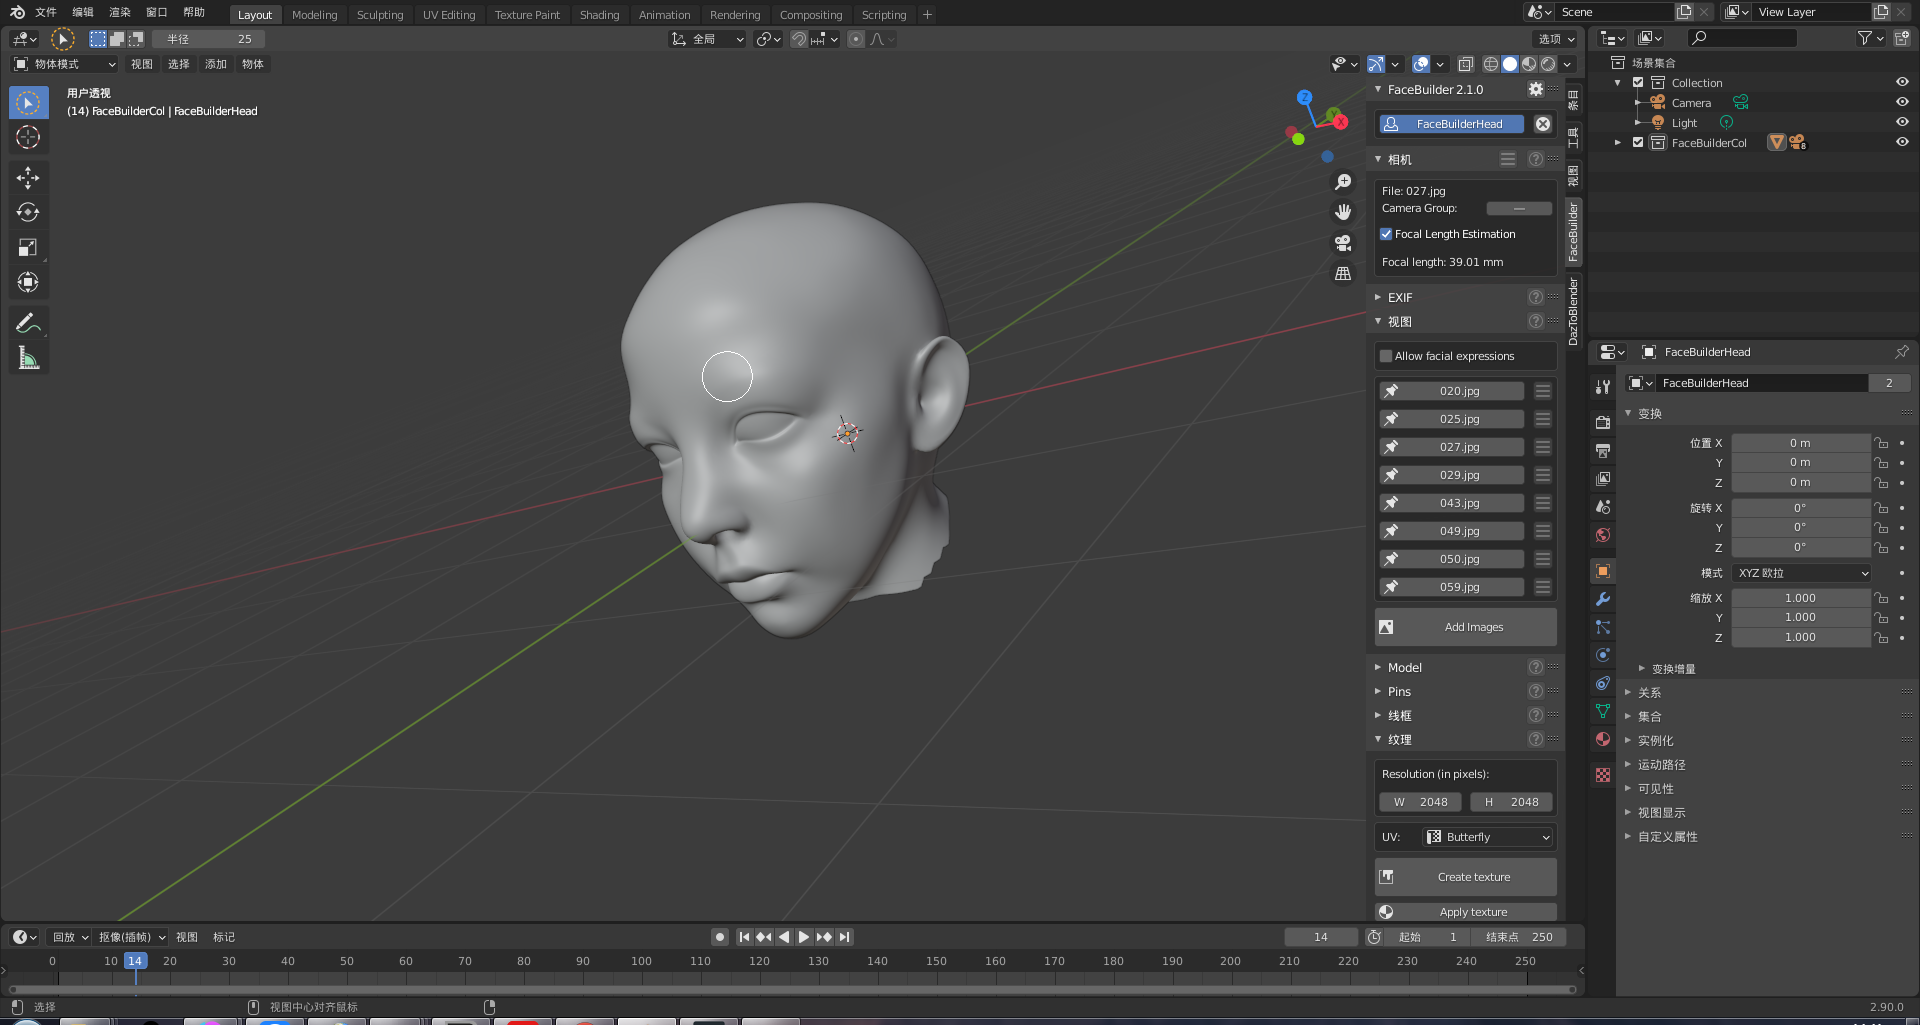 at forstå Teasing Manøvre How to replace Head form Blender FaceBuilder data - Daz 3D Forums